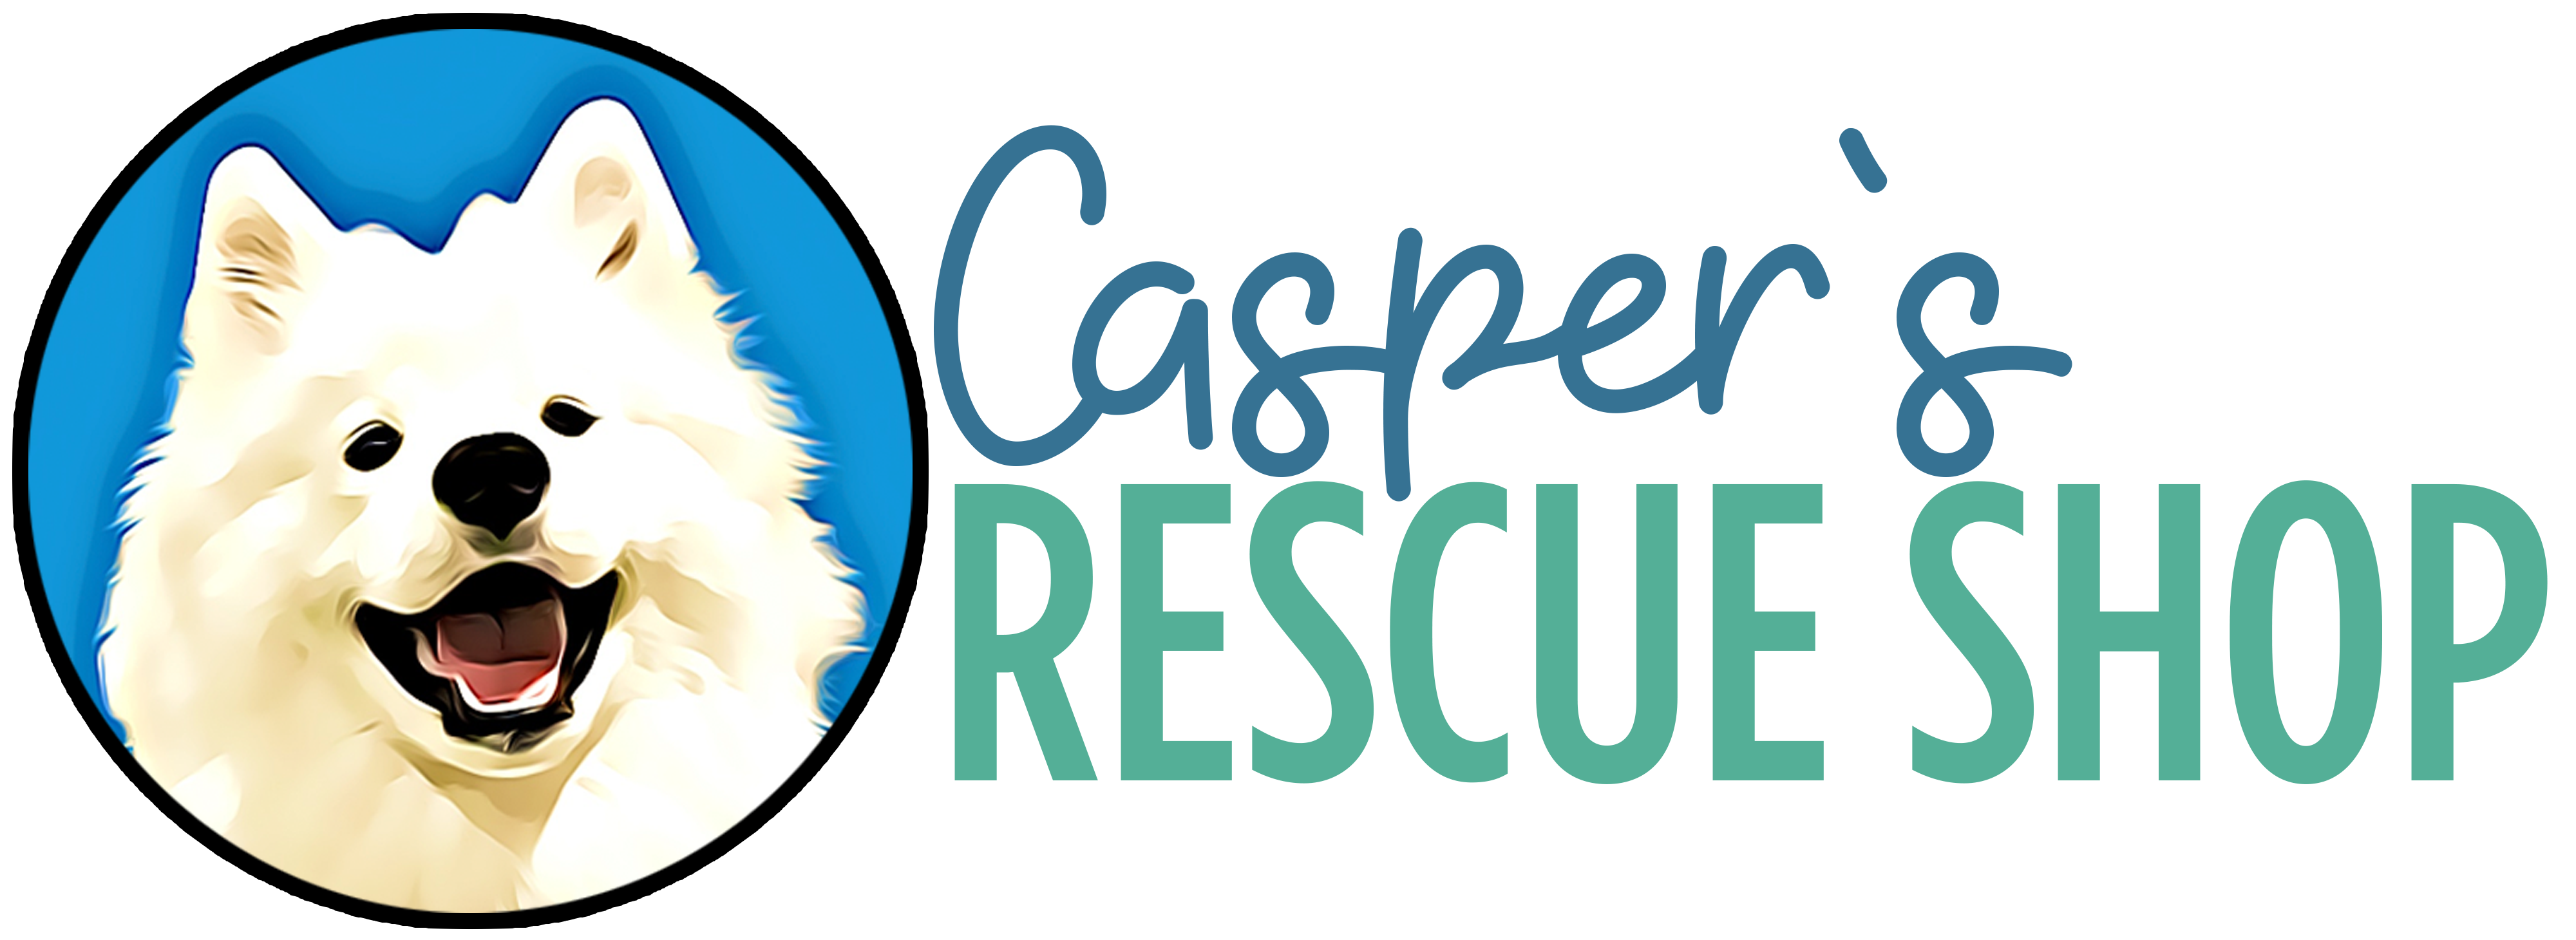 Casper's Rescue Shop